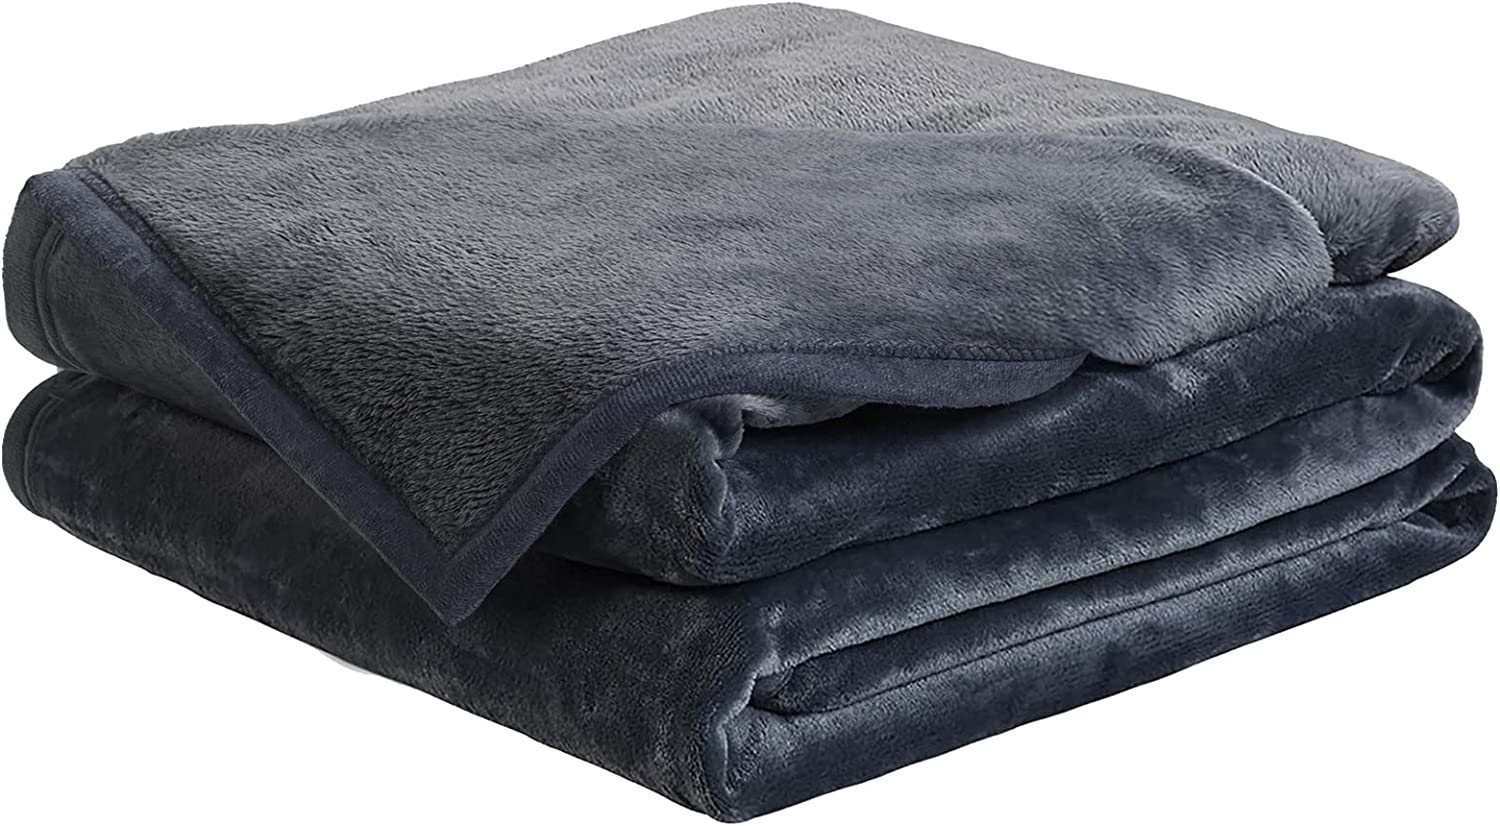 EASELAND Machine Washable Microplush Fleece Blanket